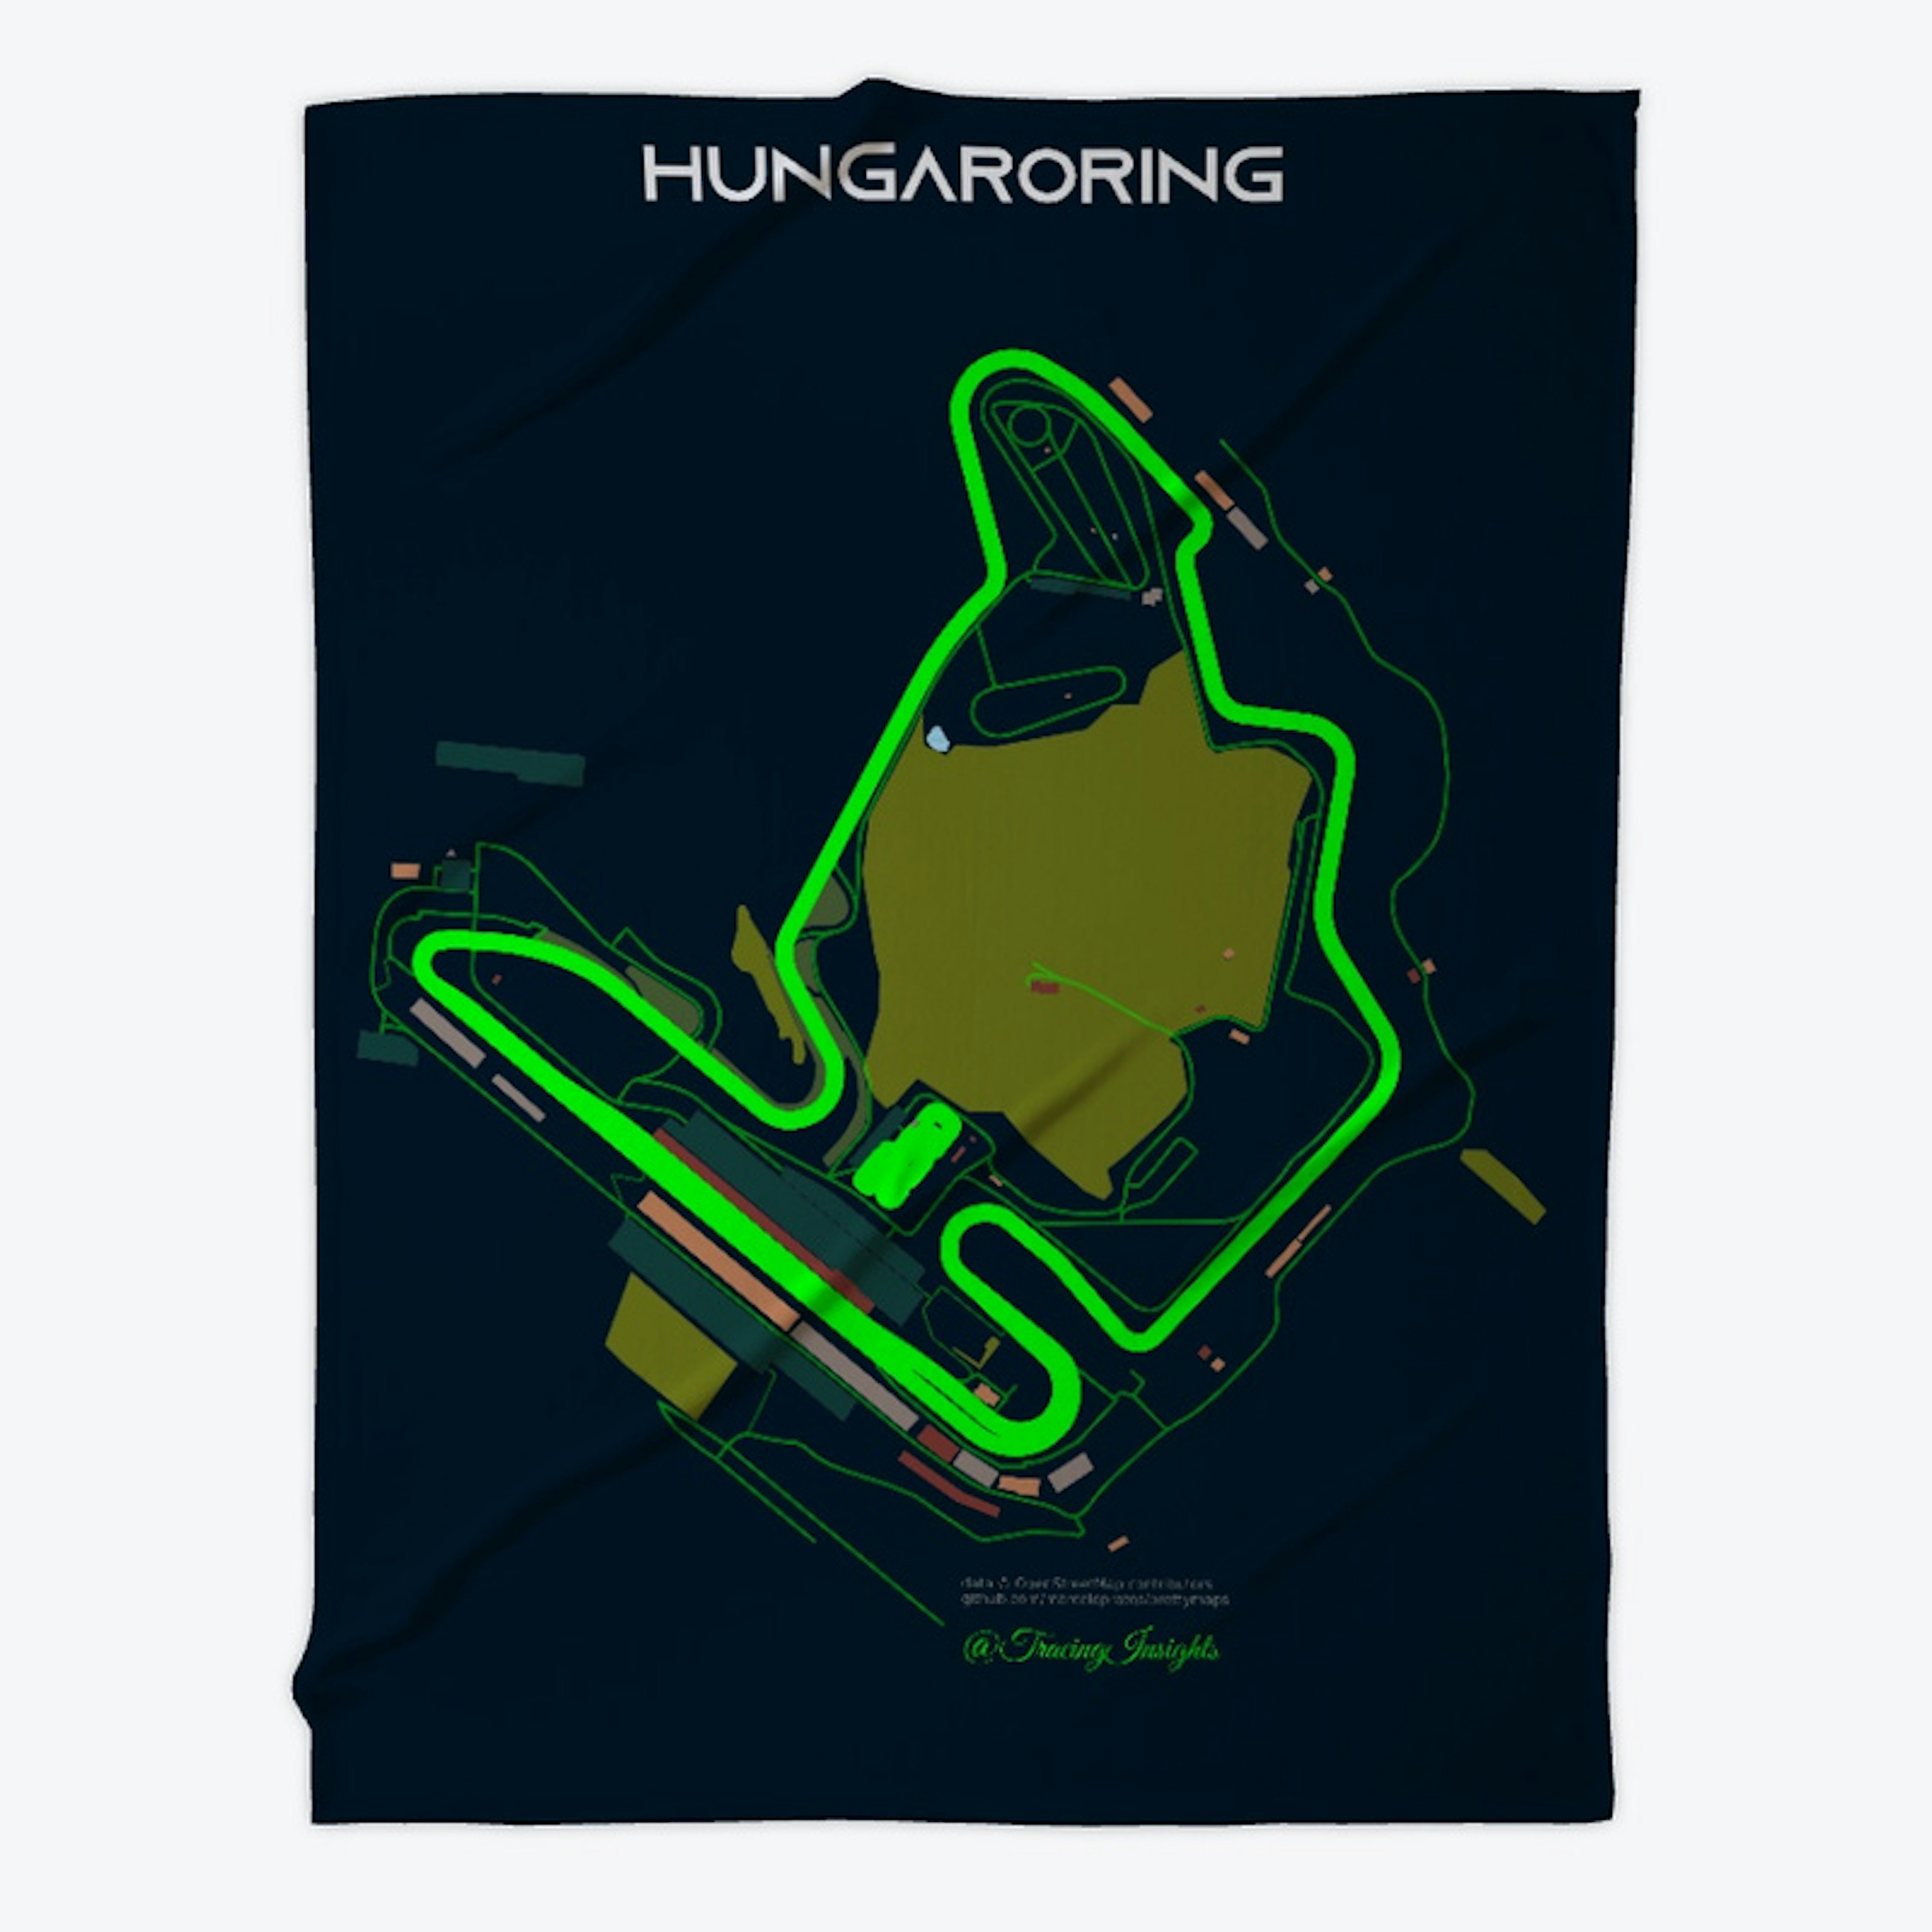 Hungarian GP Circuit